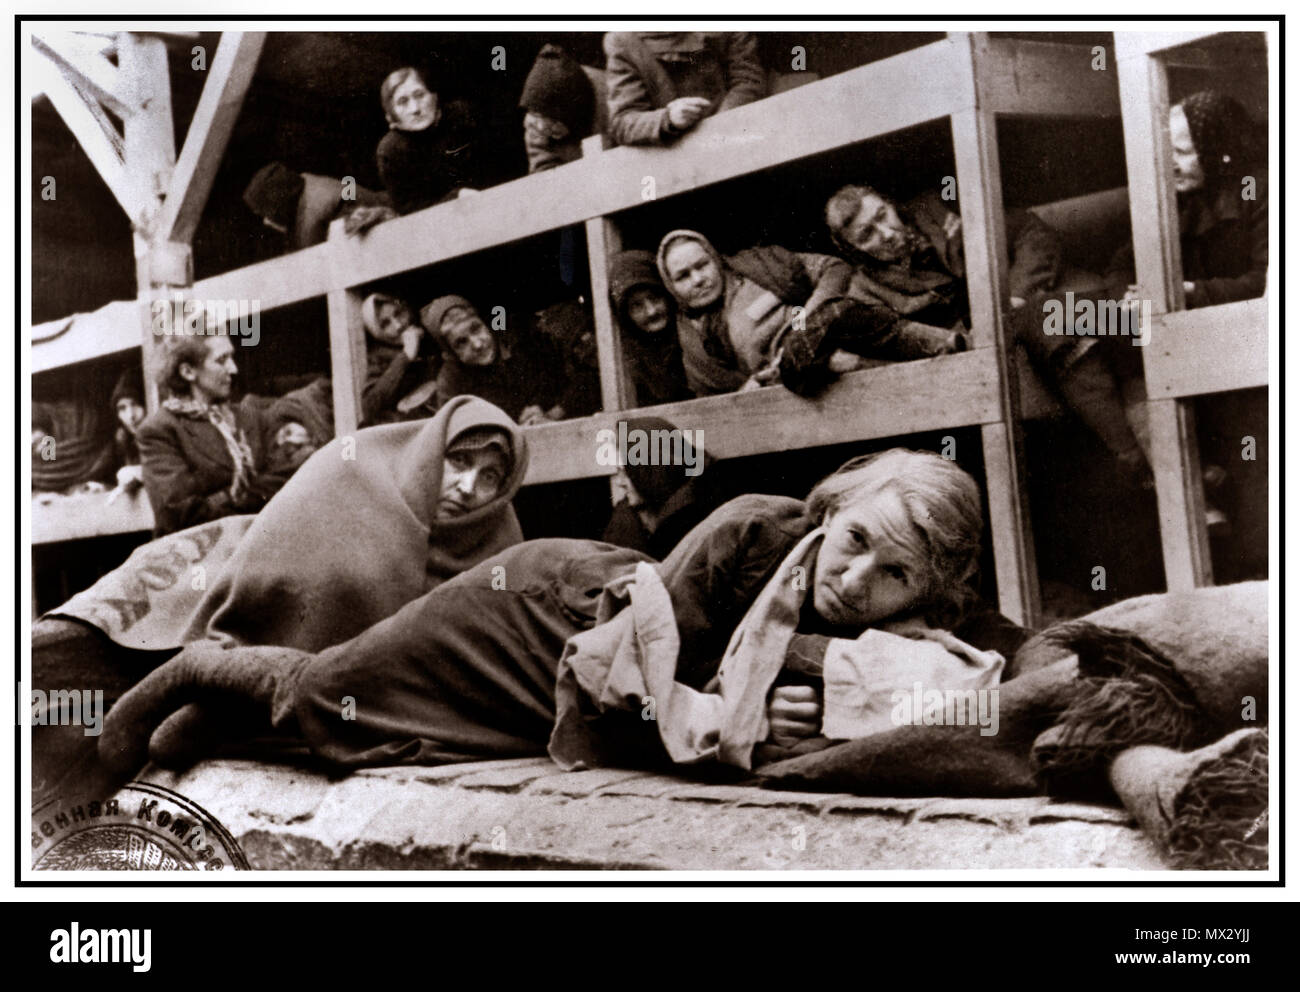 1940 Holocaust WW2 Auschwitz-Birkenau das nationalsozialistische Deutschland Konzentrationslager. Cell Block Interieur mit weiblichen Gefangenen im Gefängnis eingesperrt in Einfrieren statt beengt erniedrigenden unmenschlichen Bedingungen dieses krasse Grim emotionslos Szene ihre Befreier im Jahr 1945 begrüßt. Mehr als 1,1 Millionen Menschen starben in Auschwitz, darunter fast eine Million Juden. Diejenigen, die nicht direkt mit Gaskammern geschickt wurden zu Zwangsarbeit verurteilt. Das Konzentrationslager Auschwitz Komplex war entscheidend für die Durchführung der NS-Plan für die "endgültigen Lösung." Auschwitz seine Spuren hinterlassen als einer der berüchtigsten Camps des Zweiten Weltkrieges Stockfoto